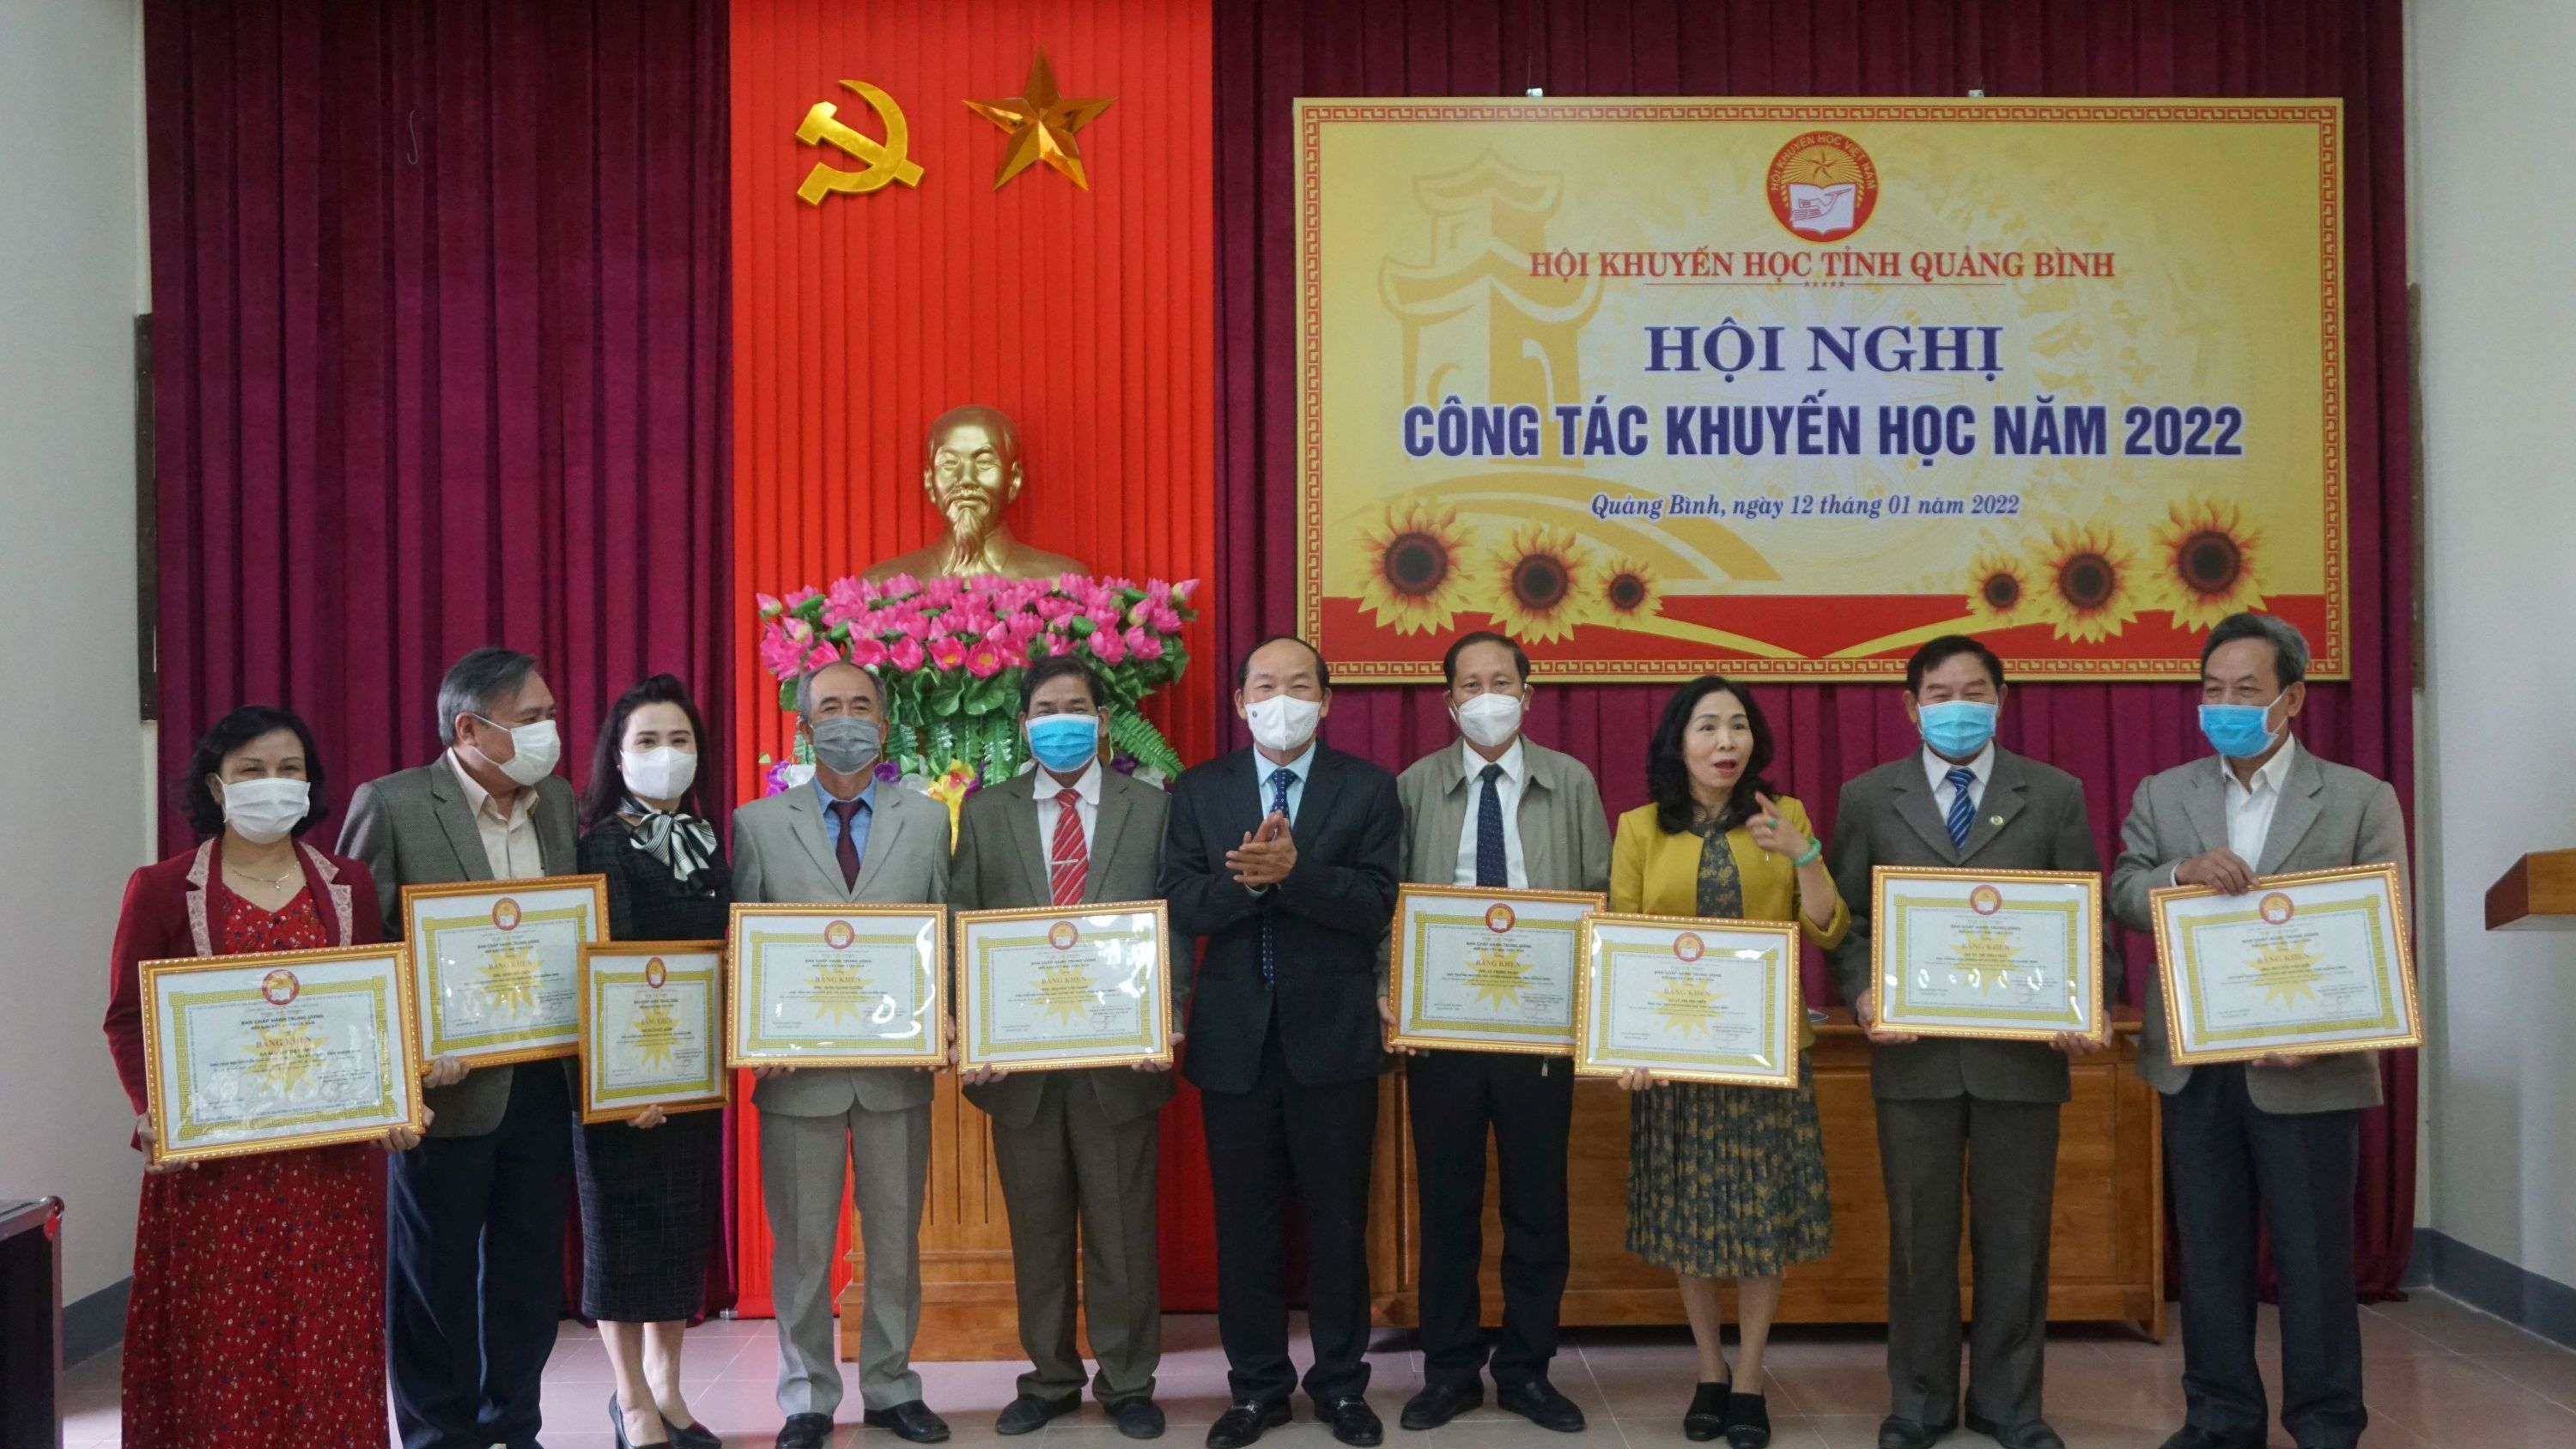 Đồng chí Trần Xuân Vinh, Chủ tịch Hội Khuyến học tỉnh trao Bằng khen của Hội Khuyến học Việt Nam cho các tập thể, cá nhân.